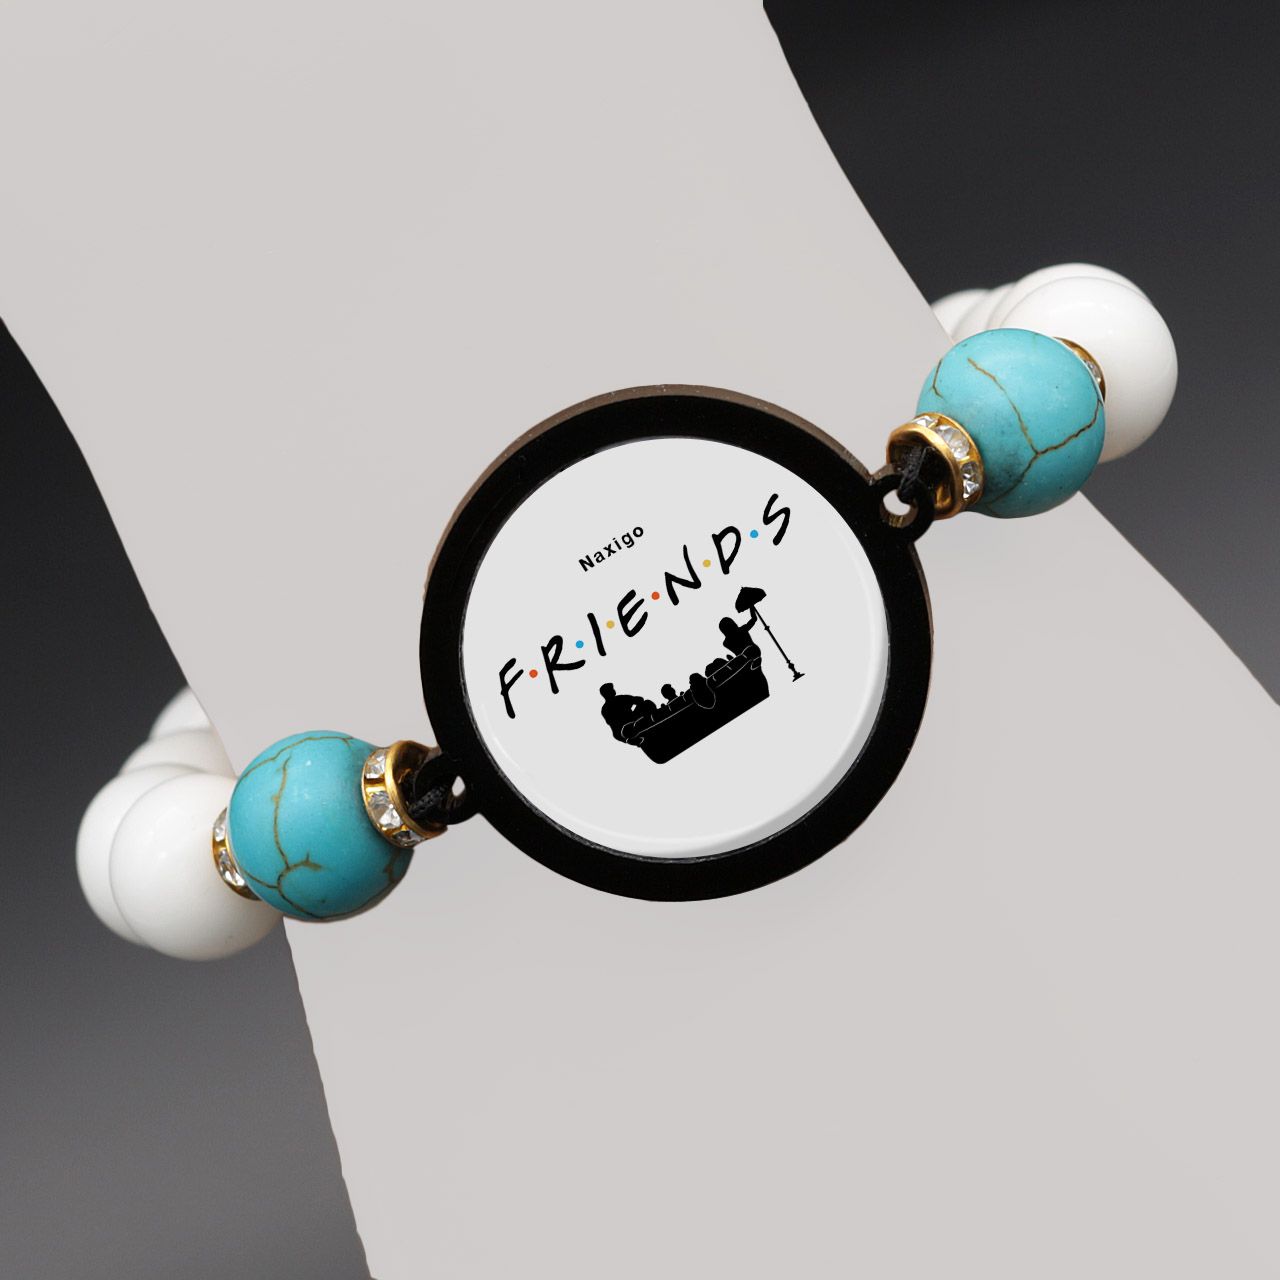 دستبند زنانه ناکسیگو طرح Friends کد BR4300 -  - 7